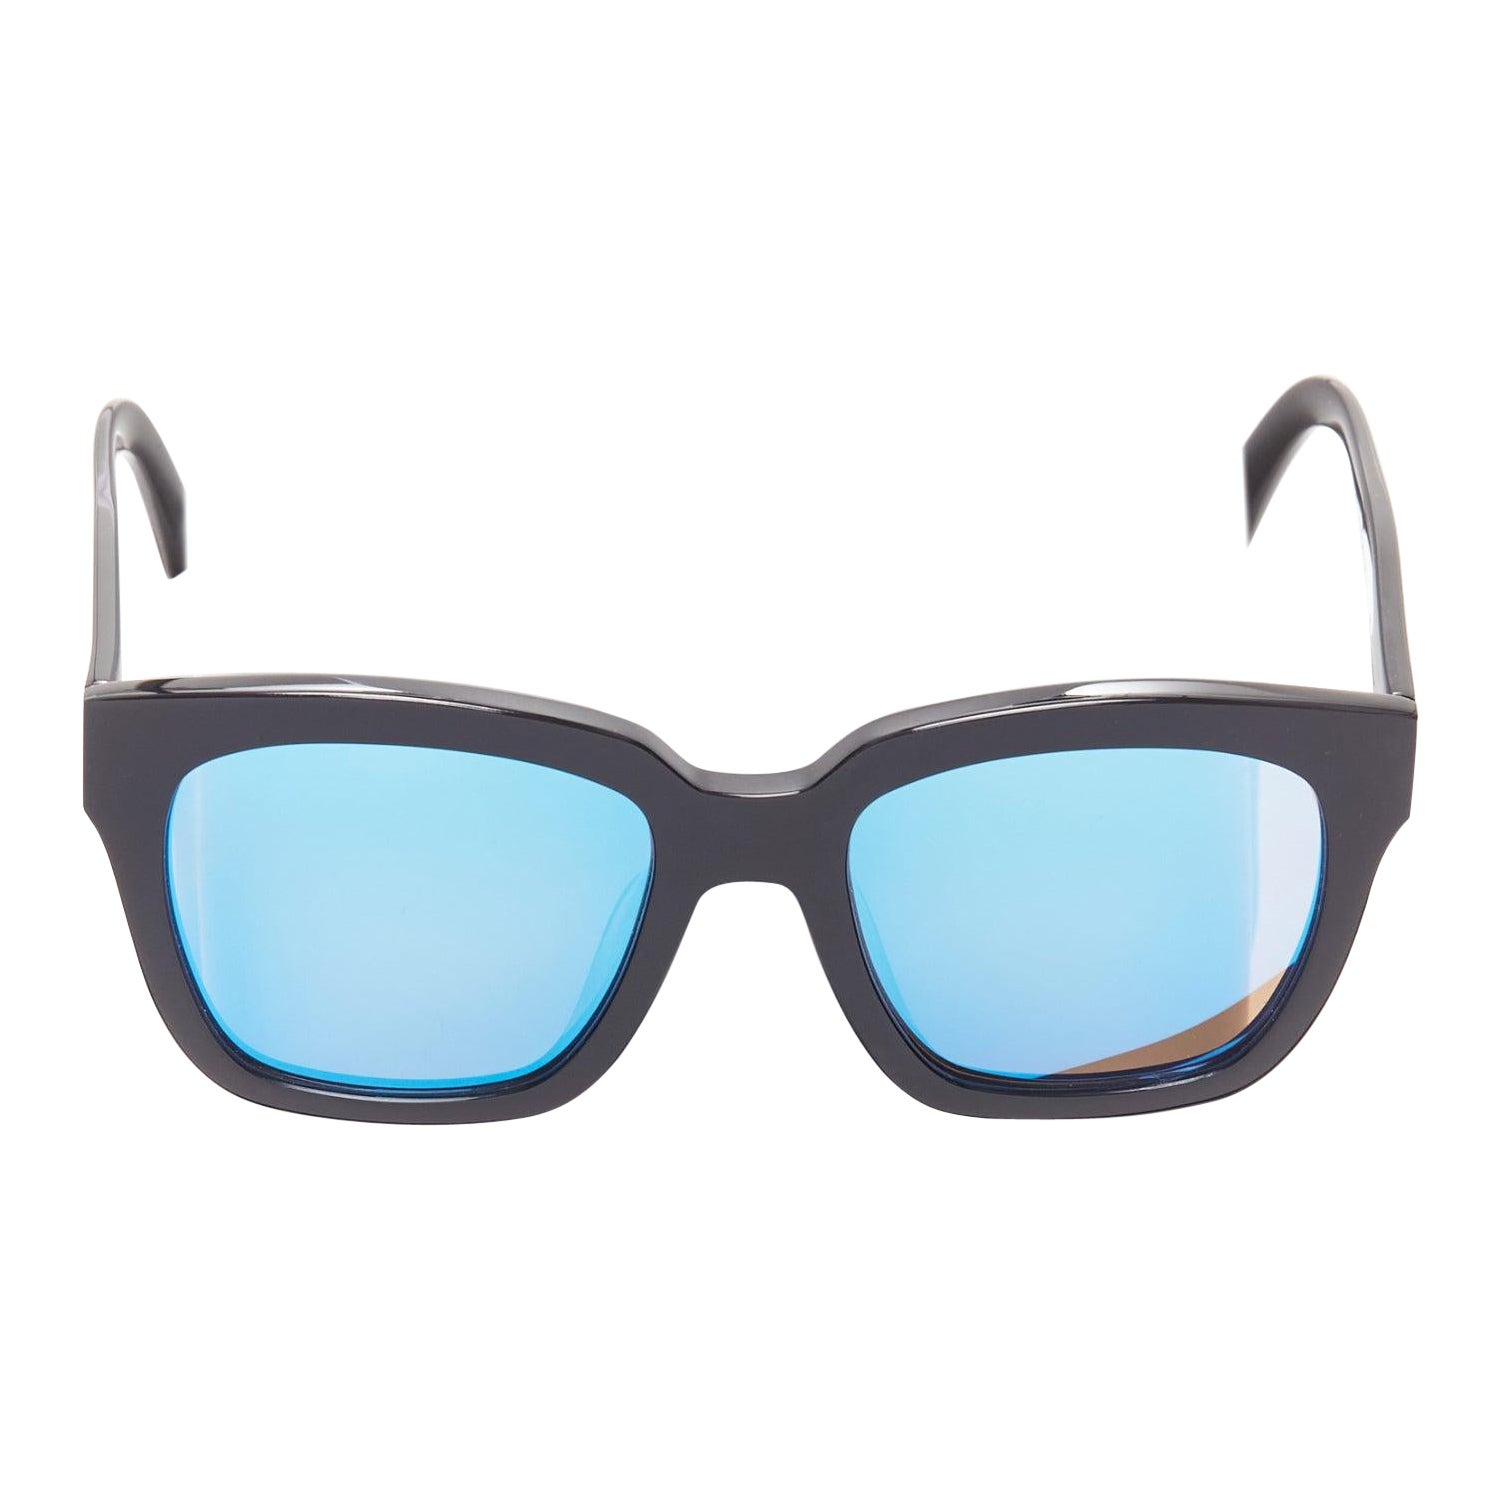 GENTLE MONSTER The Dreamer black frame reflective blue lens oversized sunglasses For Sale